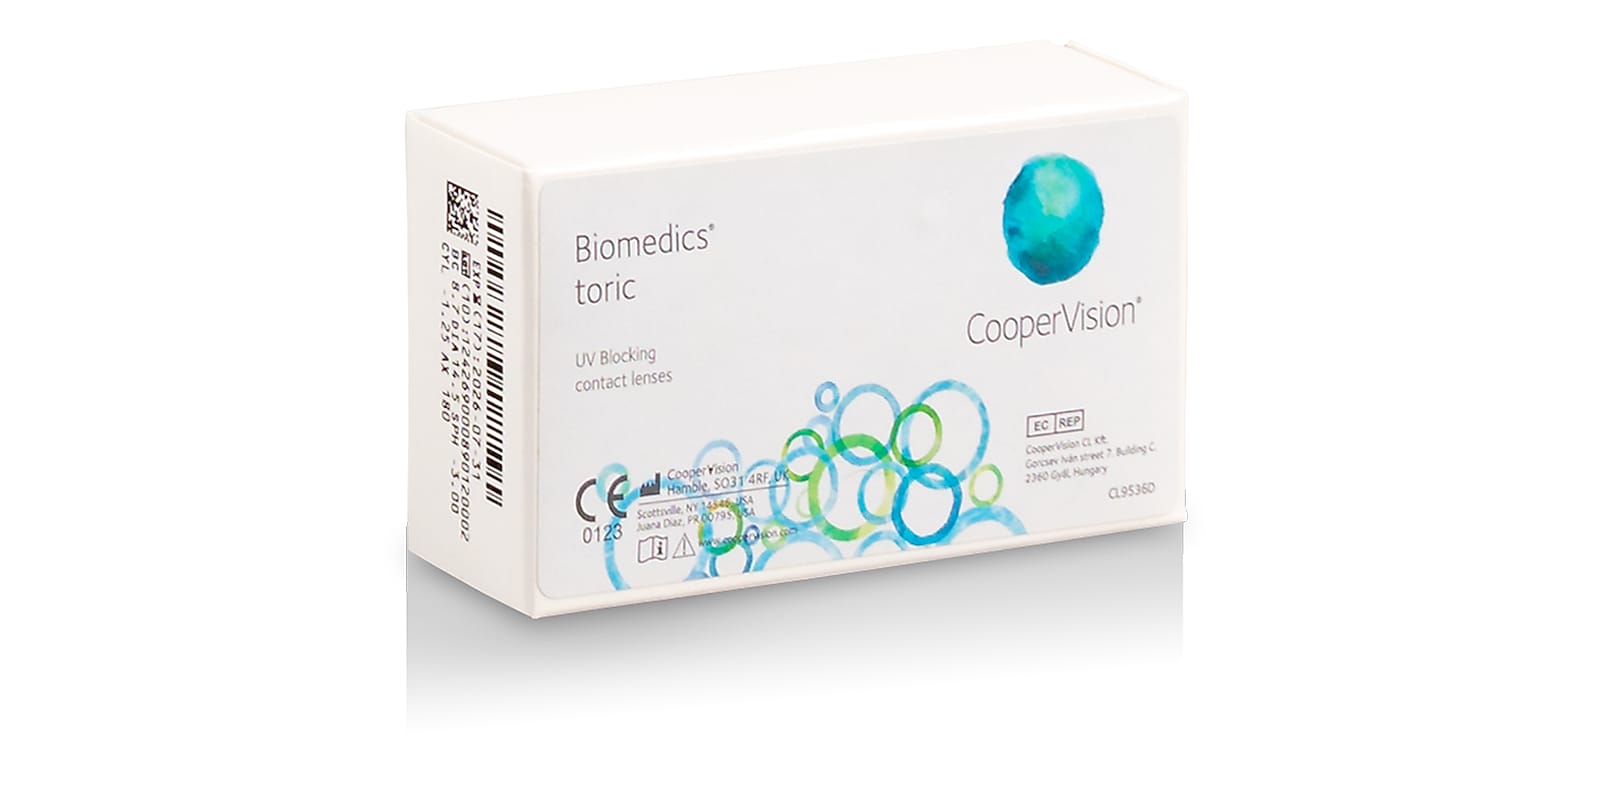 Biomedics Toric, 6 pack contact lenses